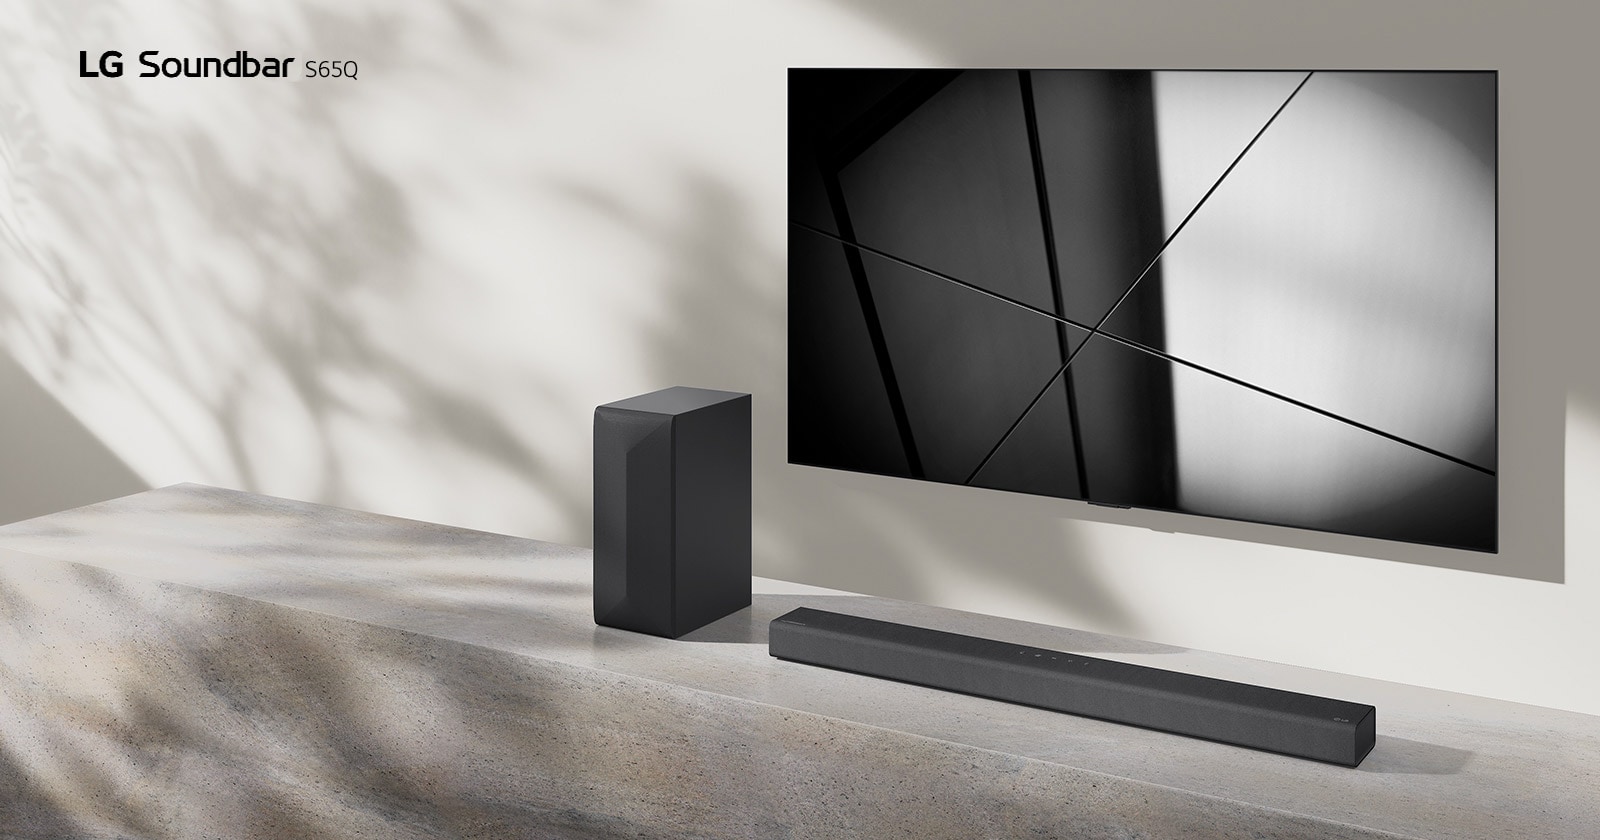 Саундбар LG S65Q и телевизорът LG се поставени заедно във всекидневната. Телевизорът е включен, показва черно-бяло изображение.